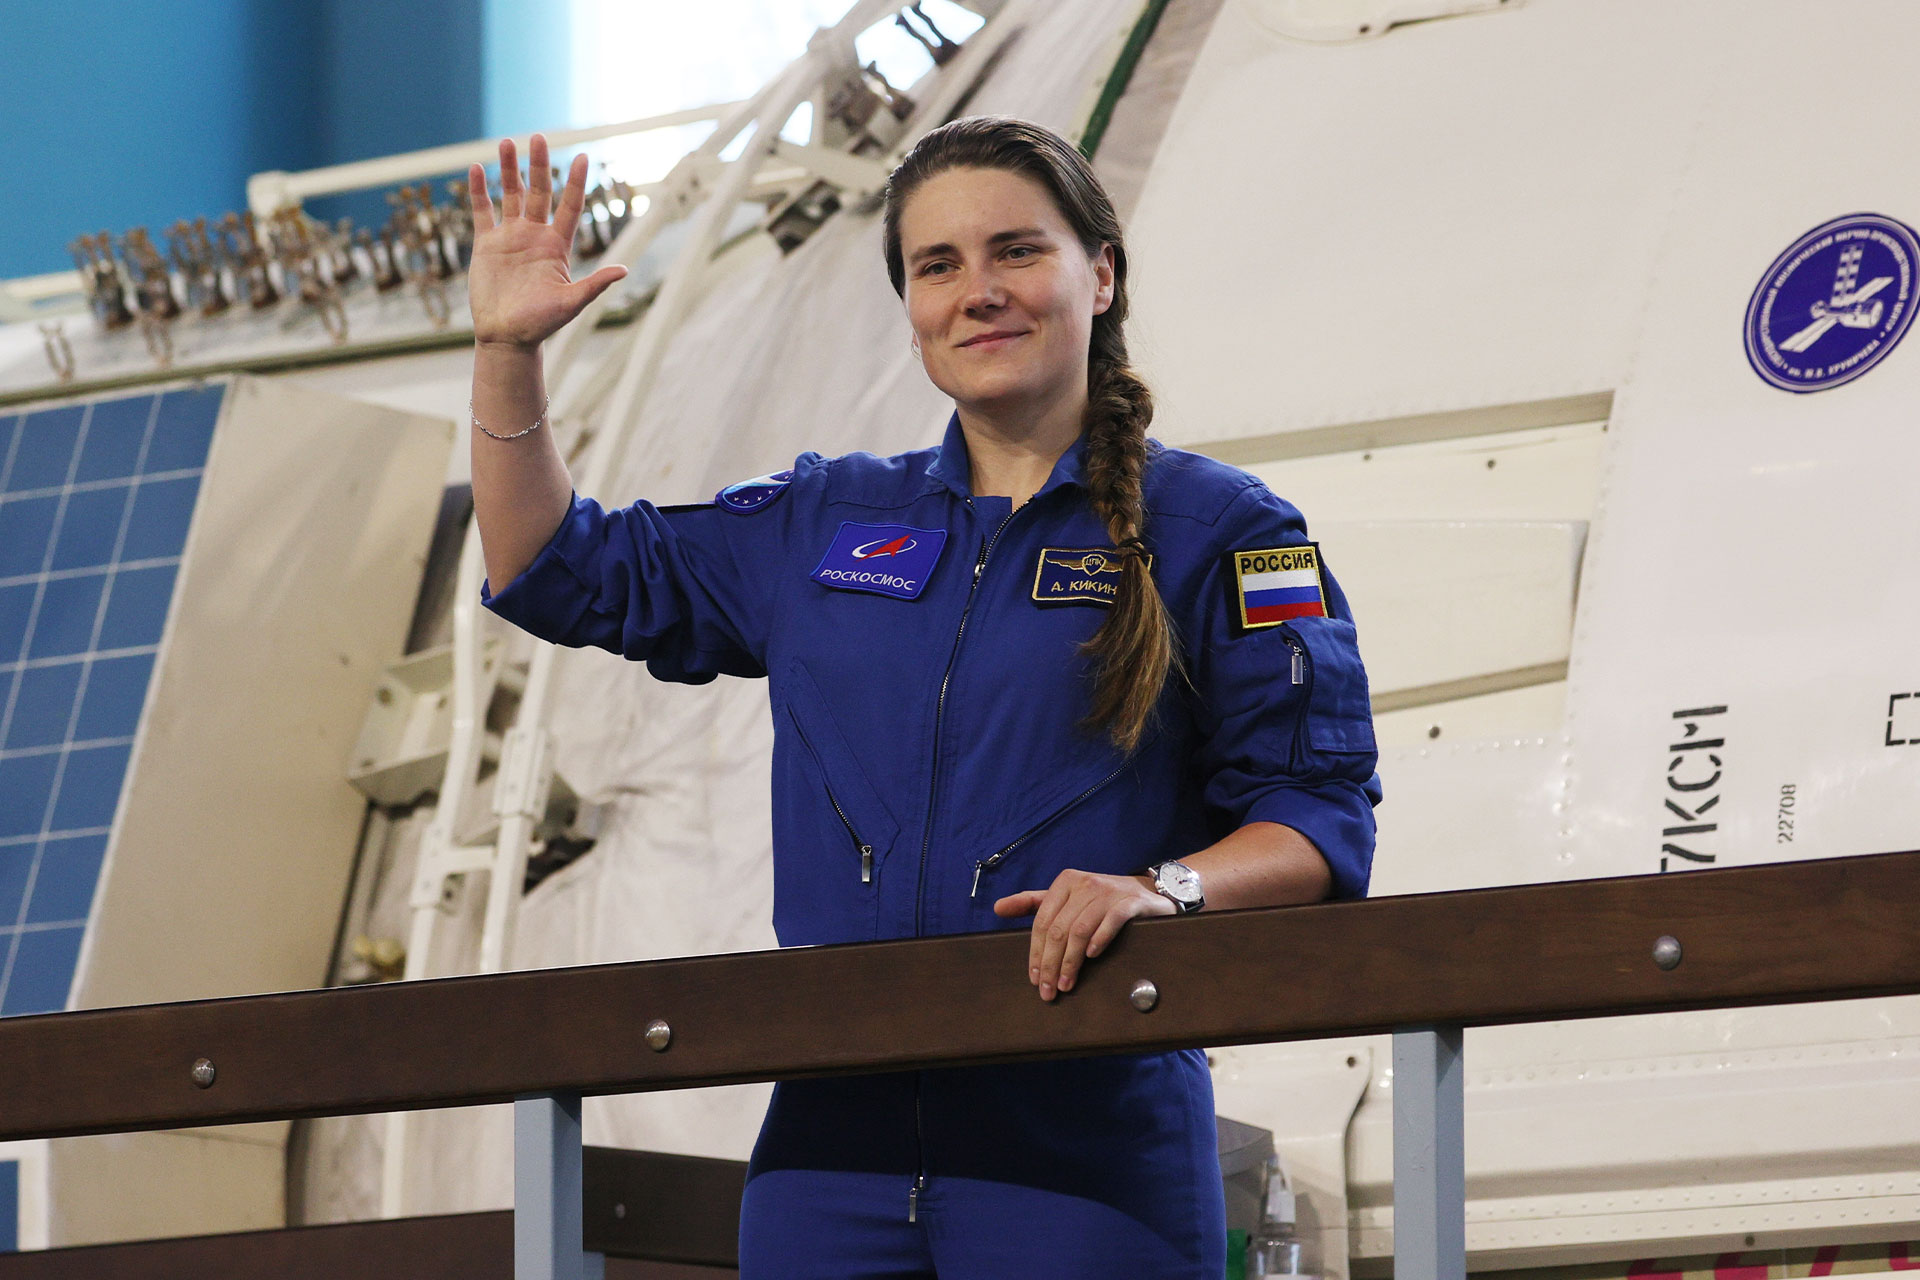 Анна Кикина перед началом экзаменационной комплексной тренировки на тренажере российского сегмента МКС в Центре подготовки космонавтов имени Ю.А. Гагарина